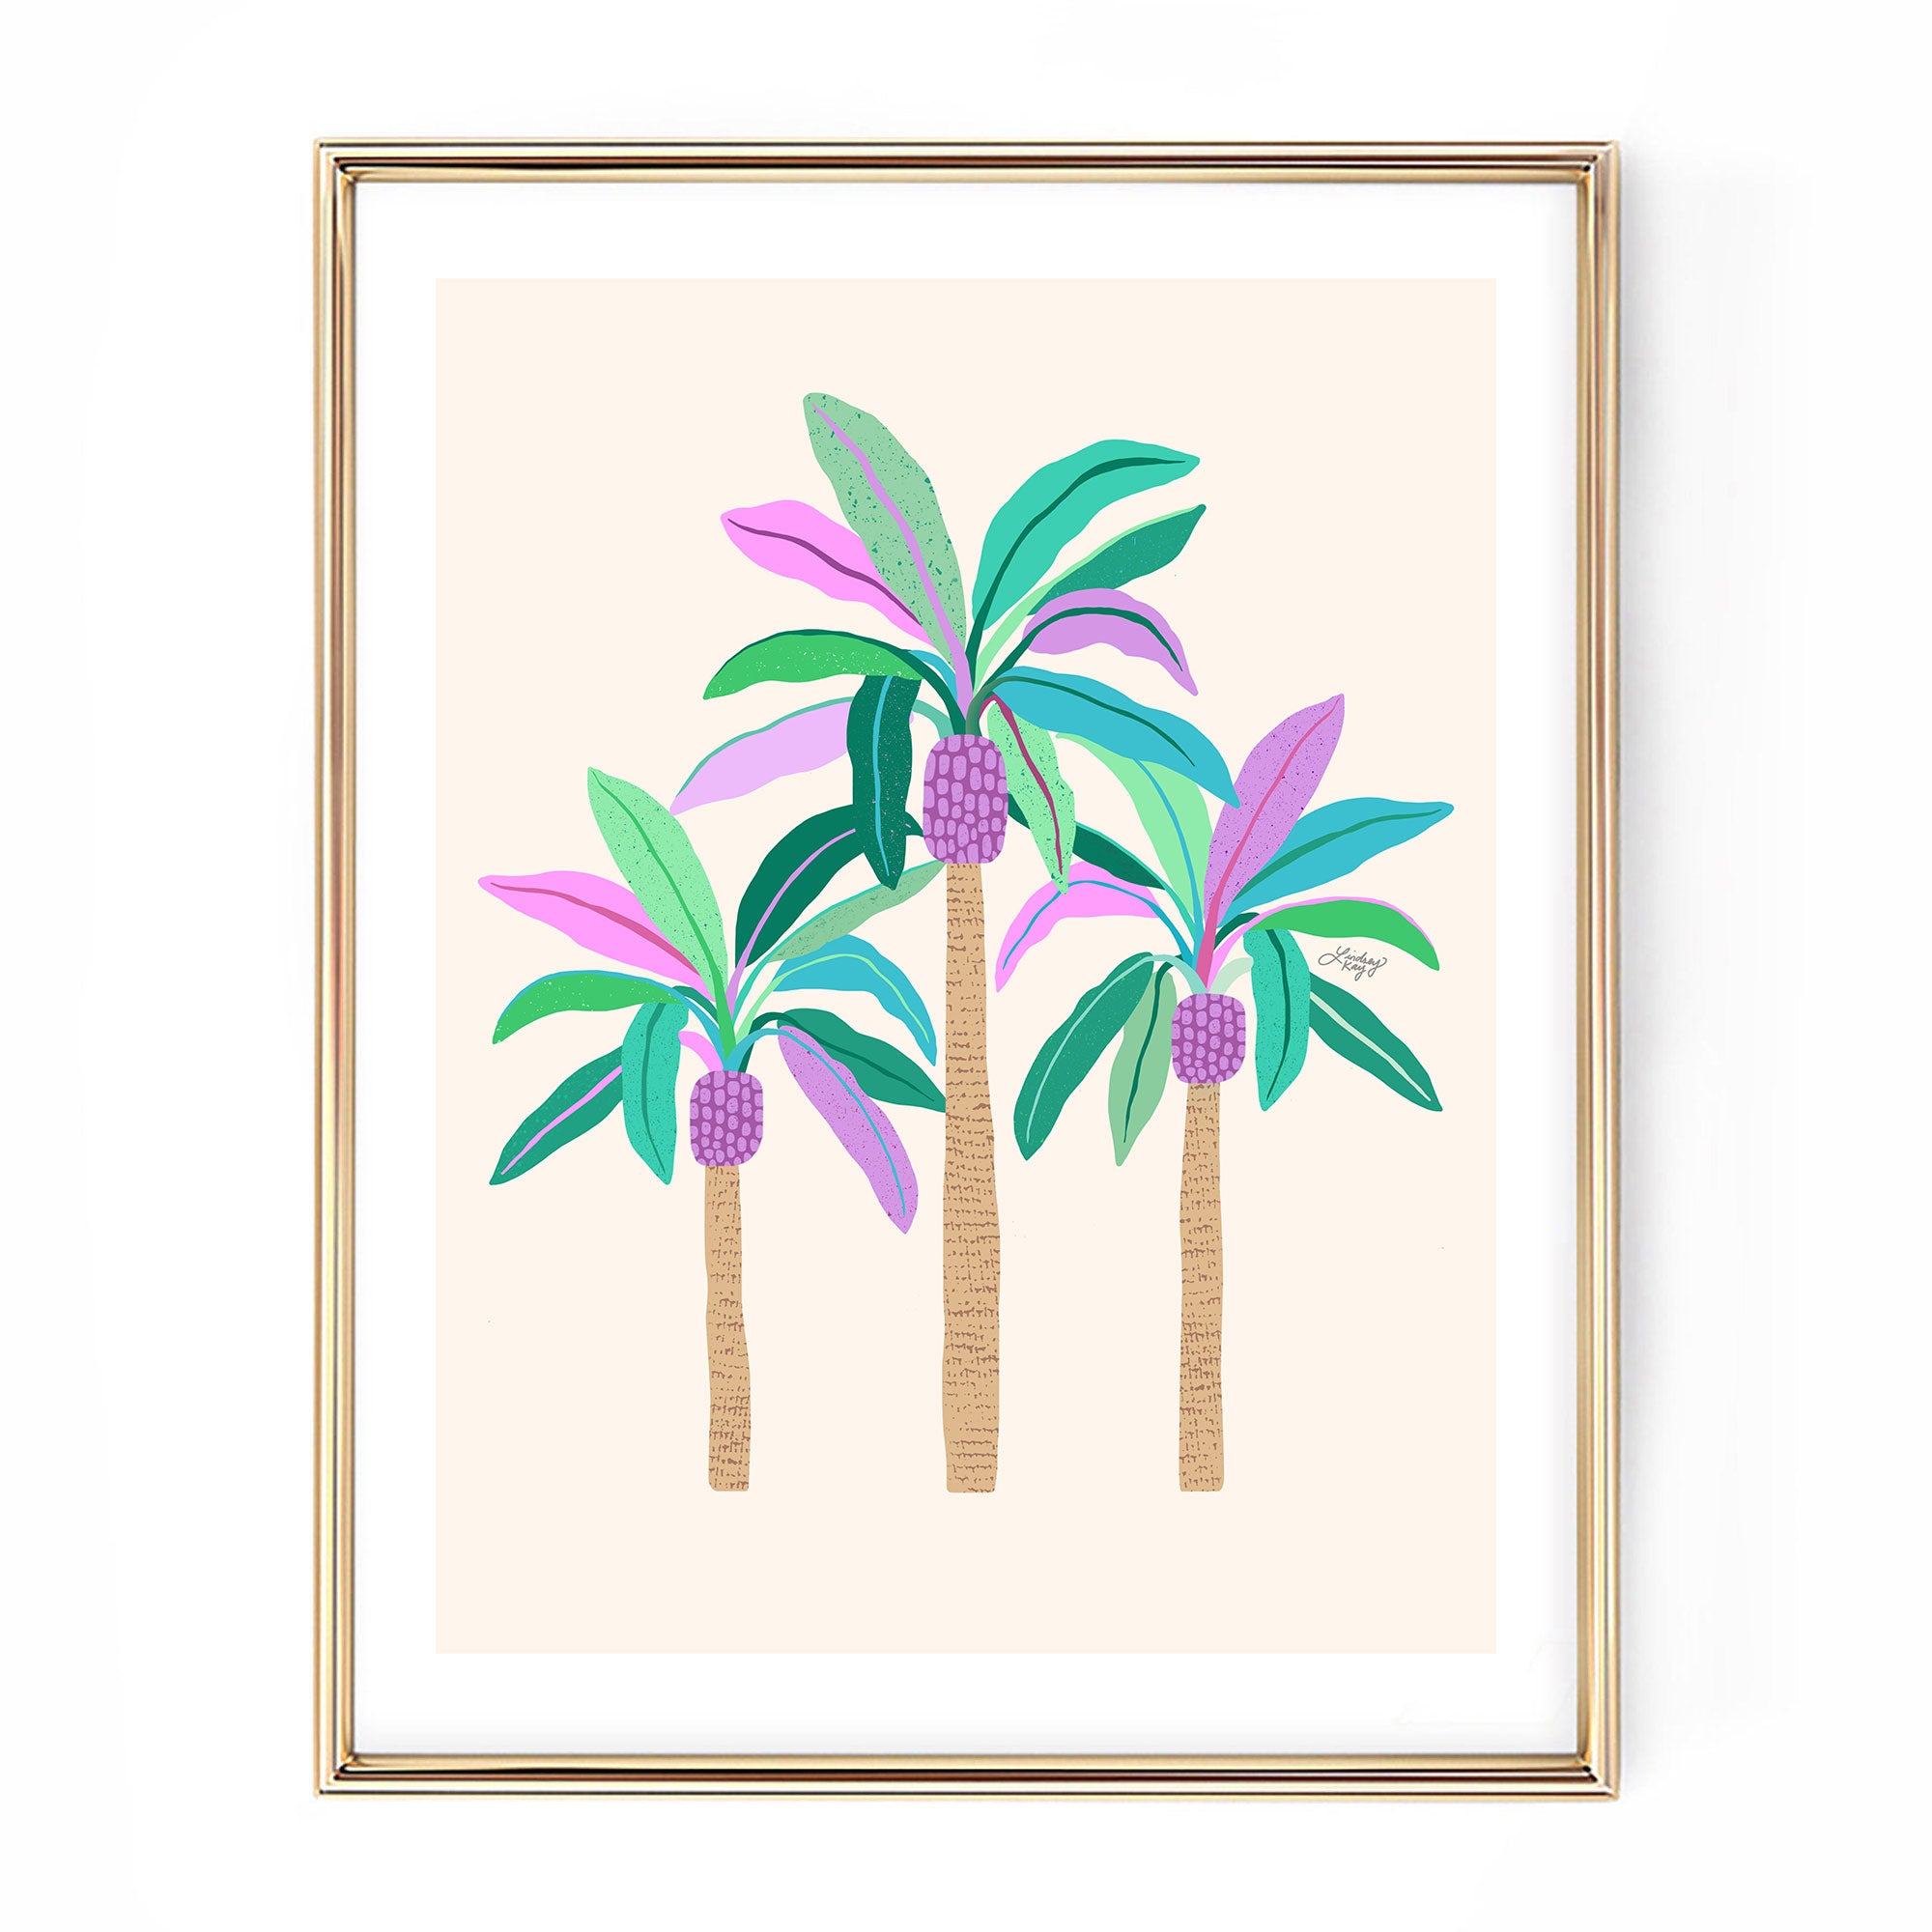 Ilustración de palmeras (paleta verde/púrpura/azul) - Impresión de arte